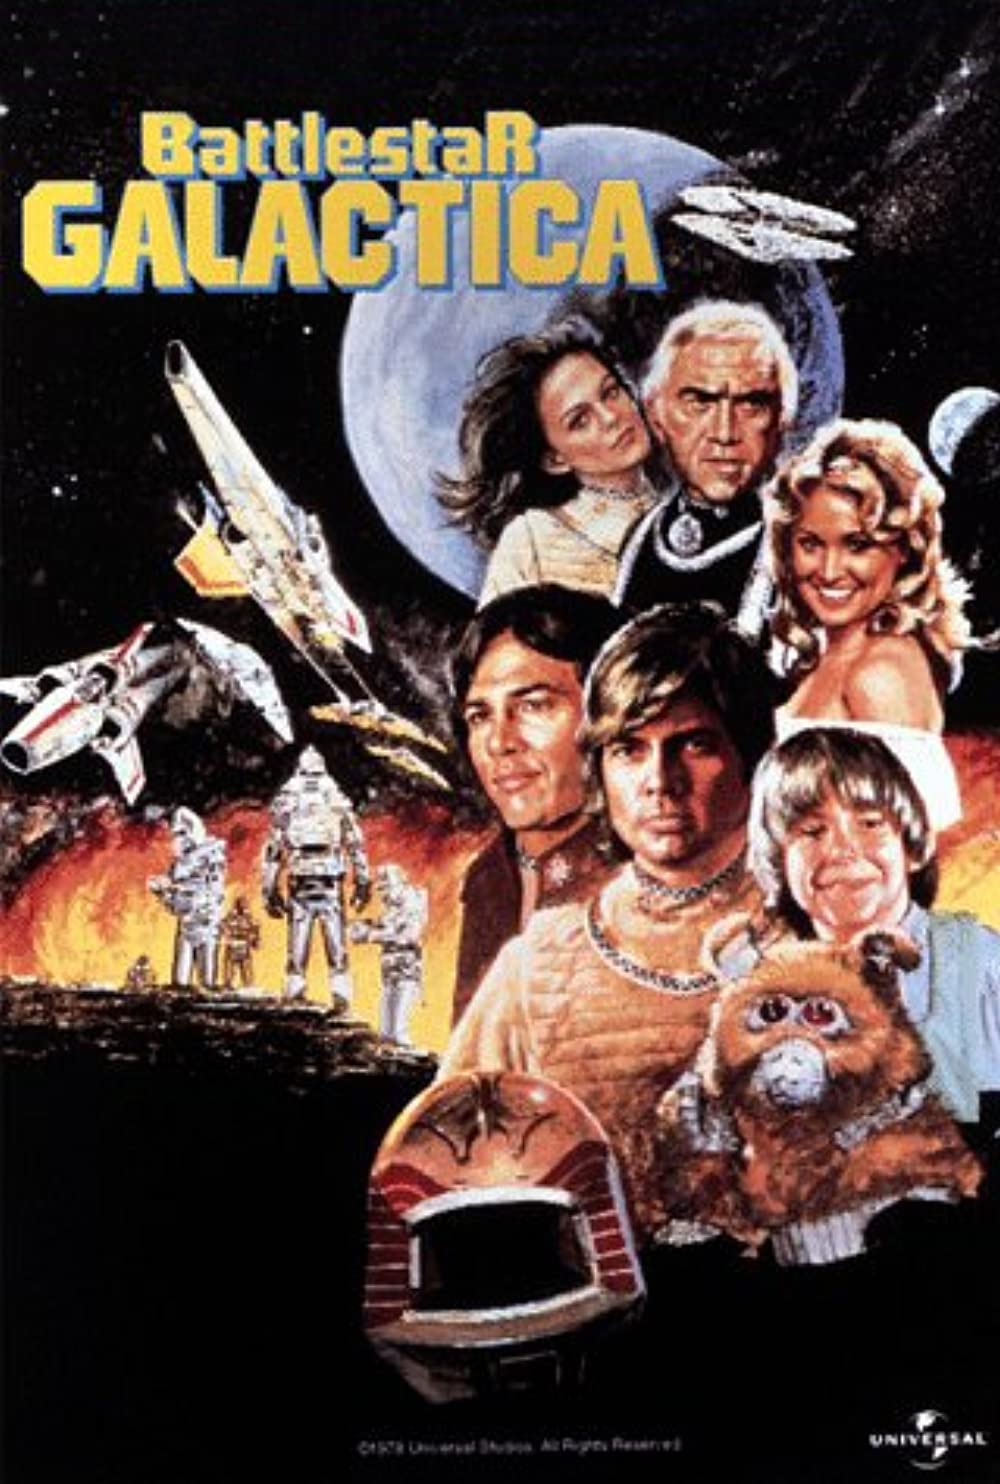 Filmbeschreibung zu Battlestar Galactica